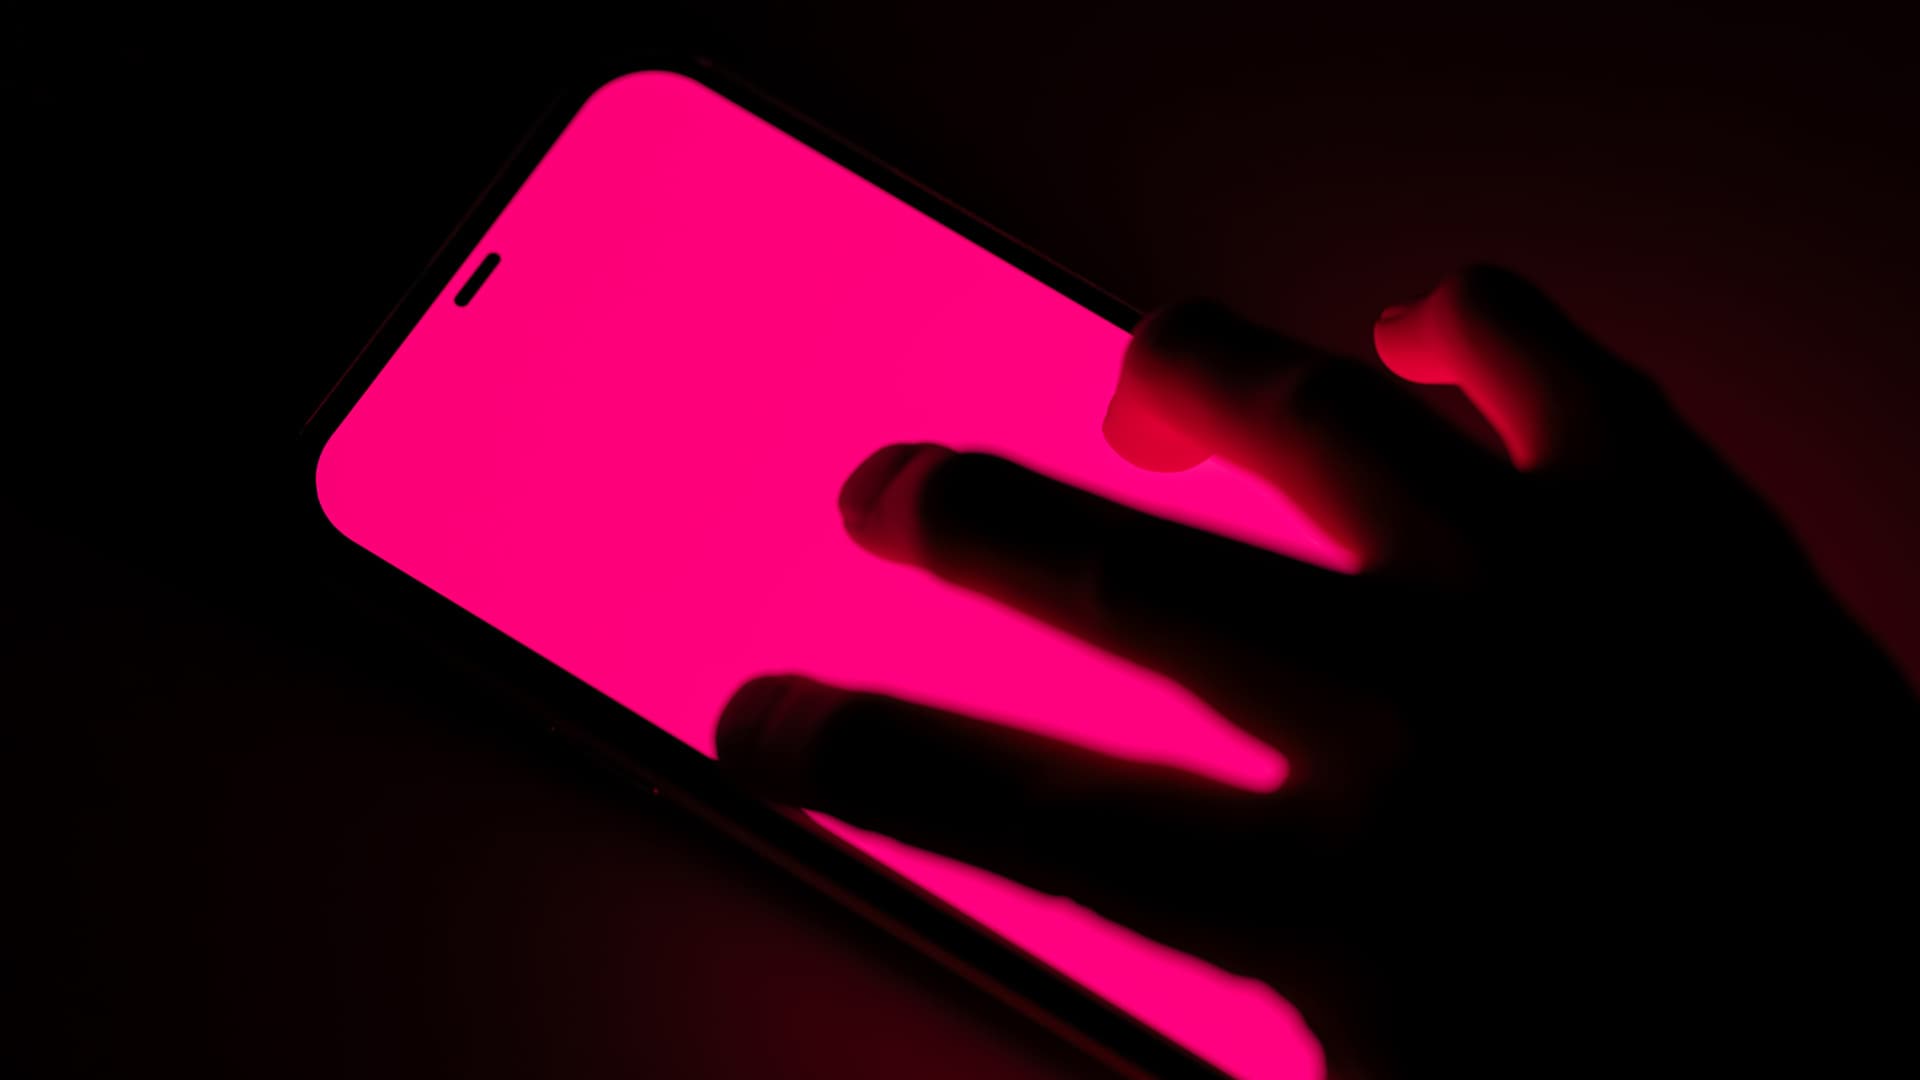 Eerie image of stalkerish looking hand on pink phone screen